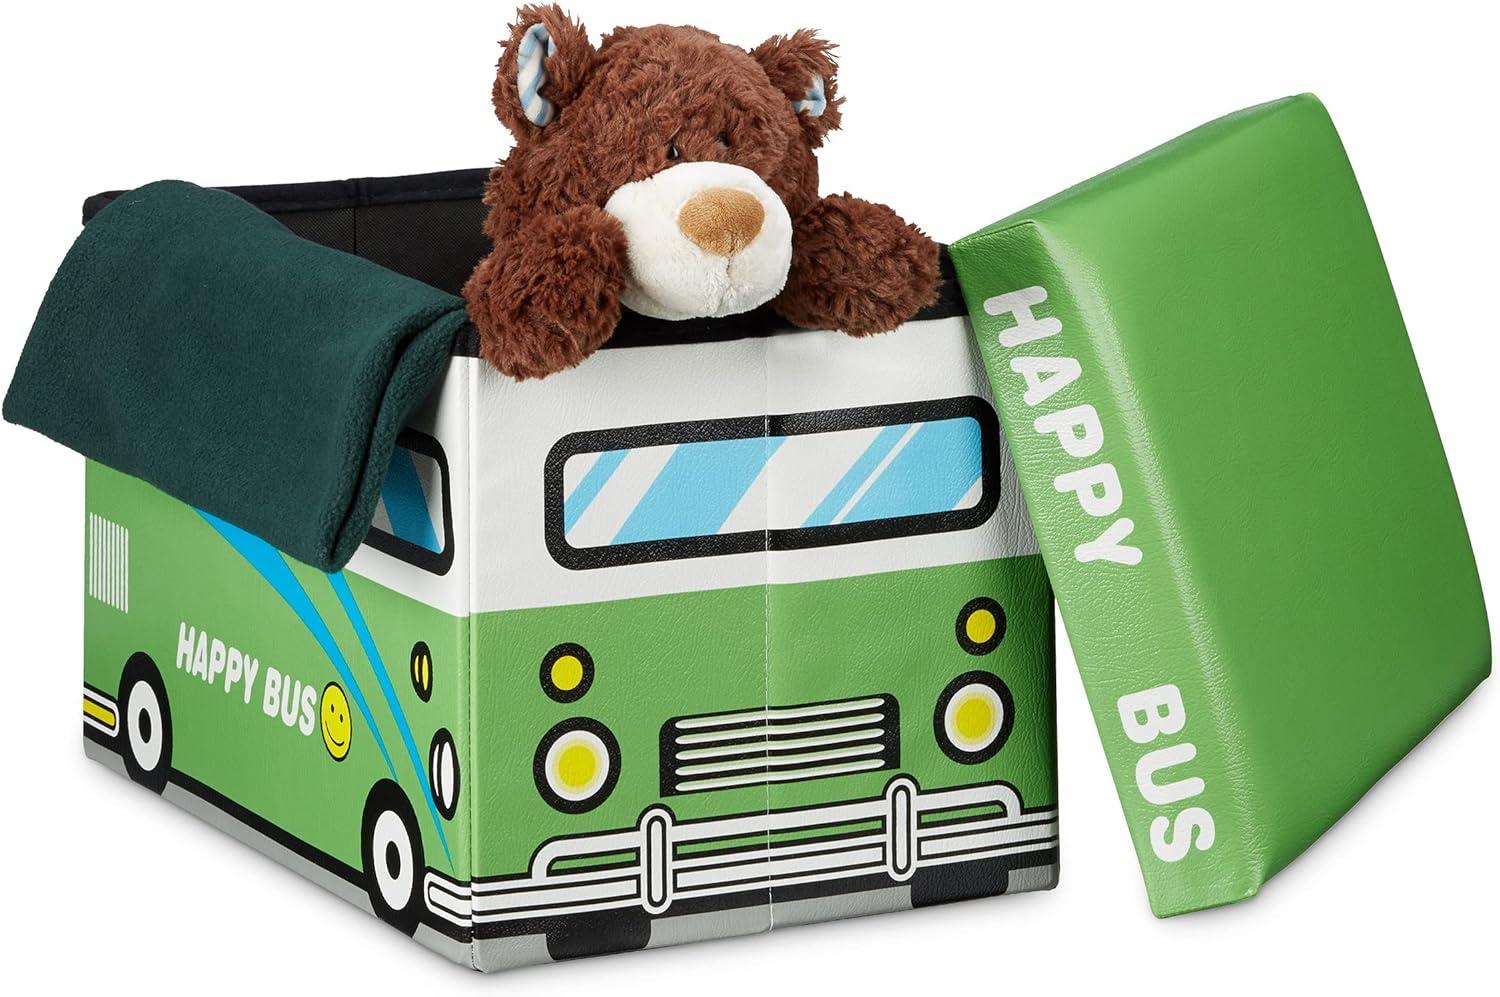 Relaxdays Faltbare Spielzeugkiste Happy Bus HBT 32 x 48 x 32 cm stabiler Kinder Sitzhocker als praktische Spielzeugbox Kunstleder mit Stauraum ca. 37 l und Deckel zum Abnehmen für Kinderzimmer, grün Bild 1